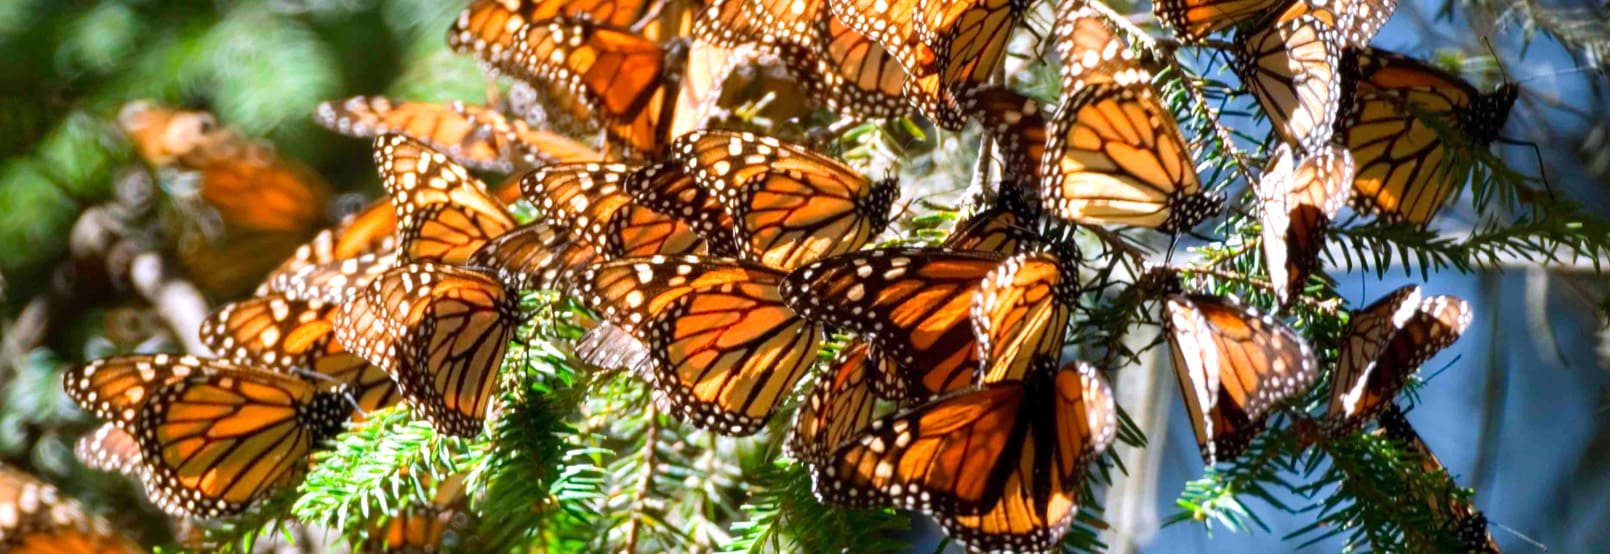 Observacion de Mariposas en el Estado de Mexico